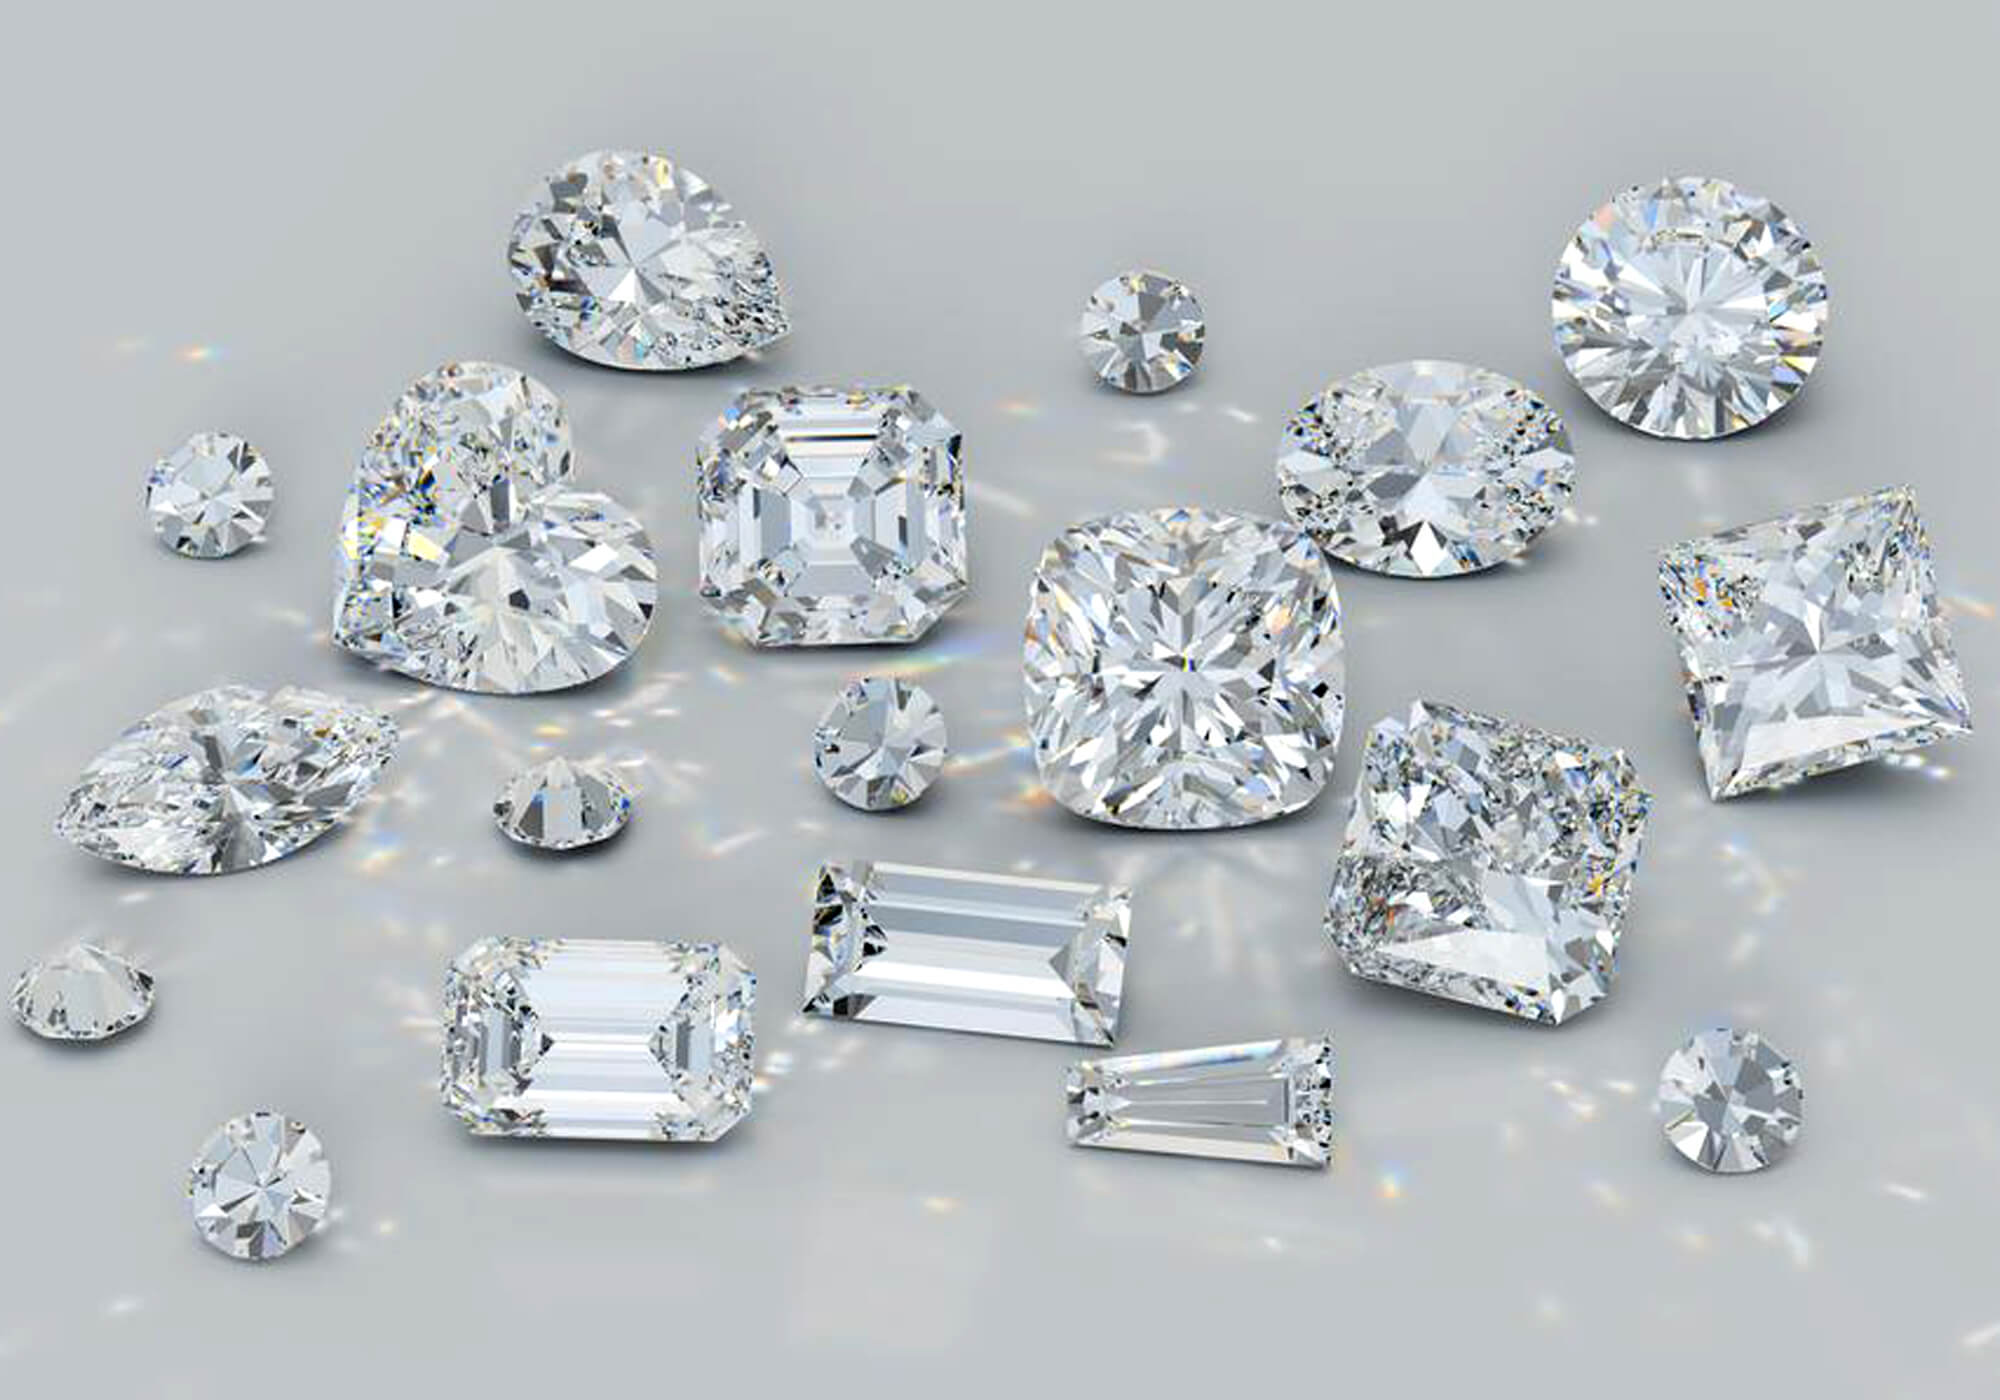 Choosing an ideal diamond shape